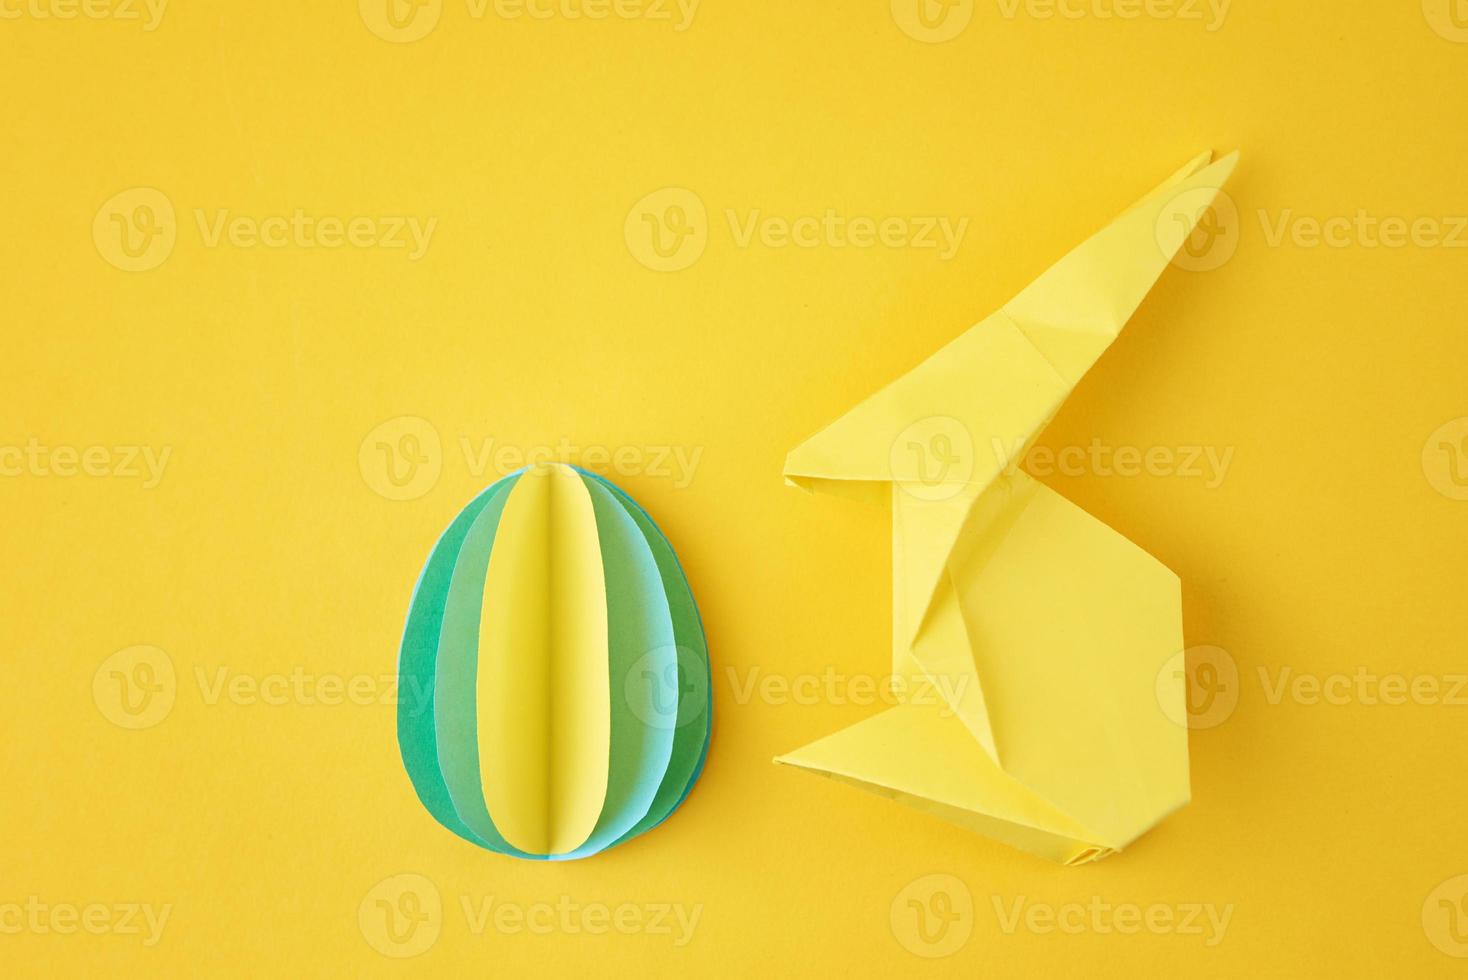 origami de papel eseter conejo y huevo de color sobre el fondo amarillo foto